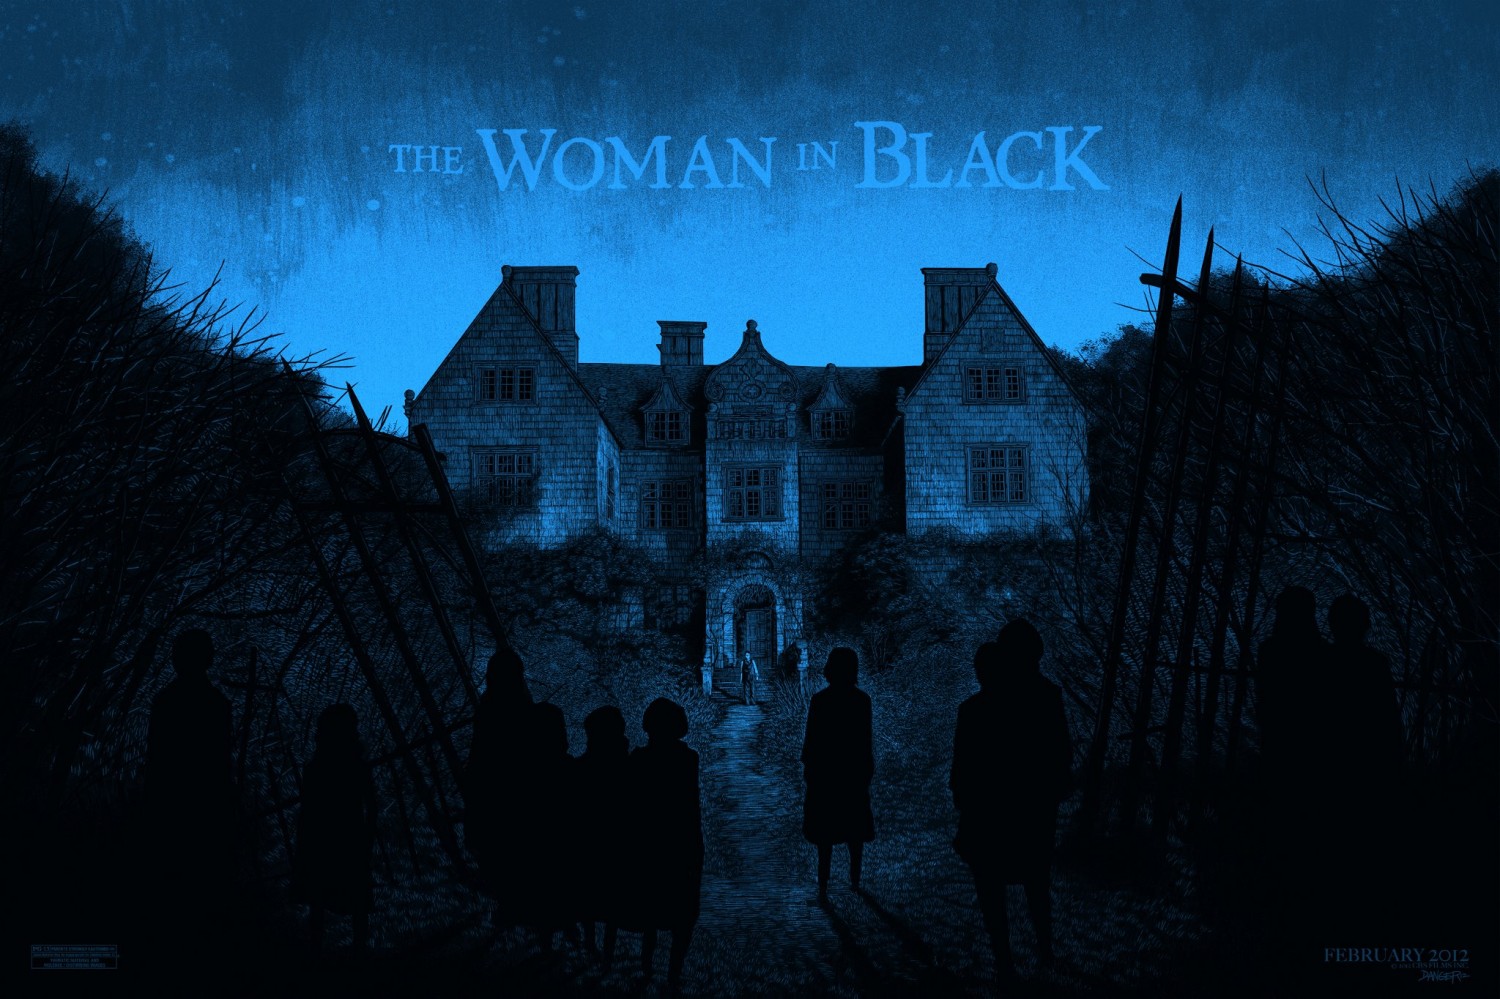 http://2.bp.blogspot.com/-ZFldIgF8BMU/TyFFZ3FSYiI/AAAAAAAACk4/9RUTdaPMpUI/s1600/the-woman-in-black-poster1.jpg